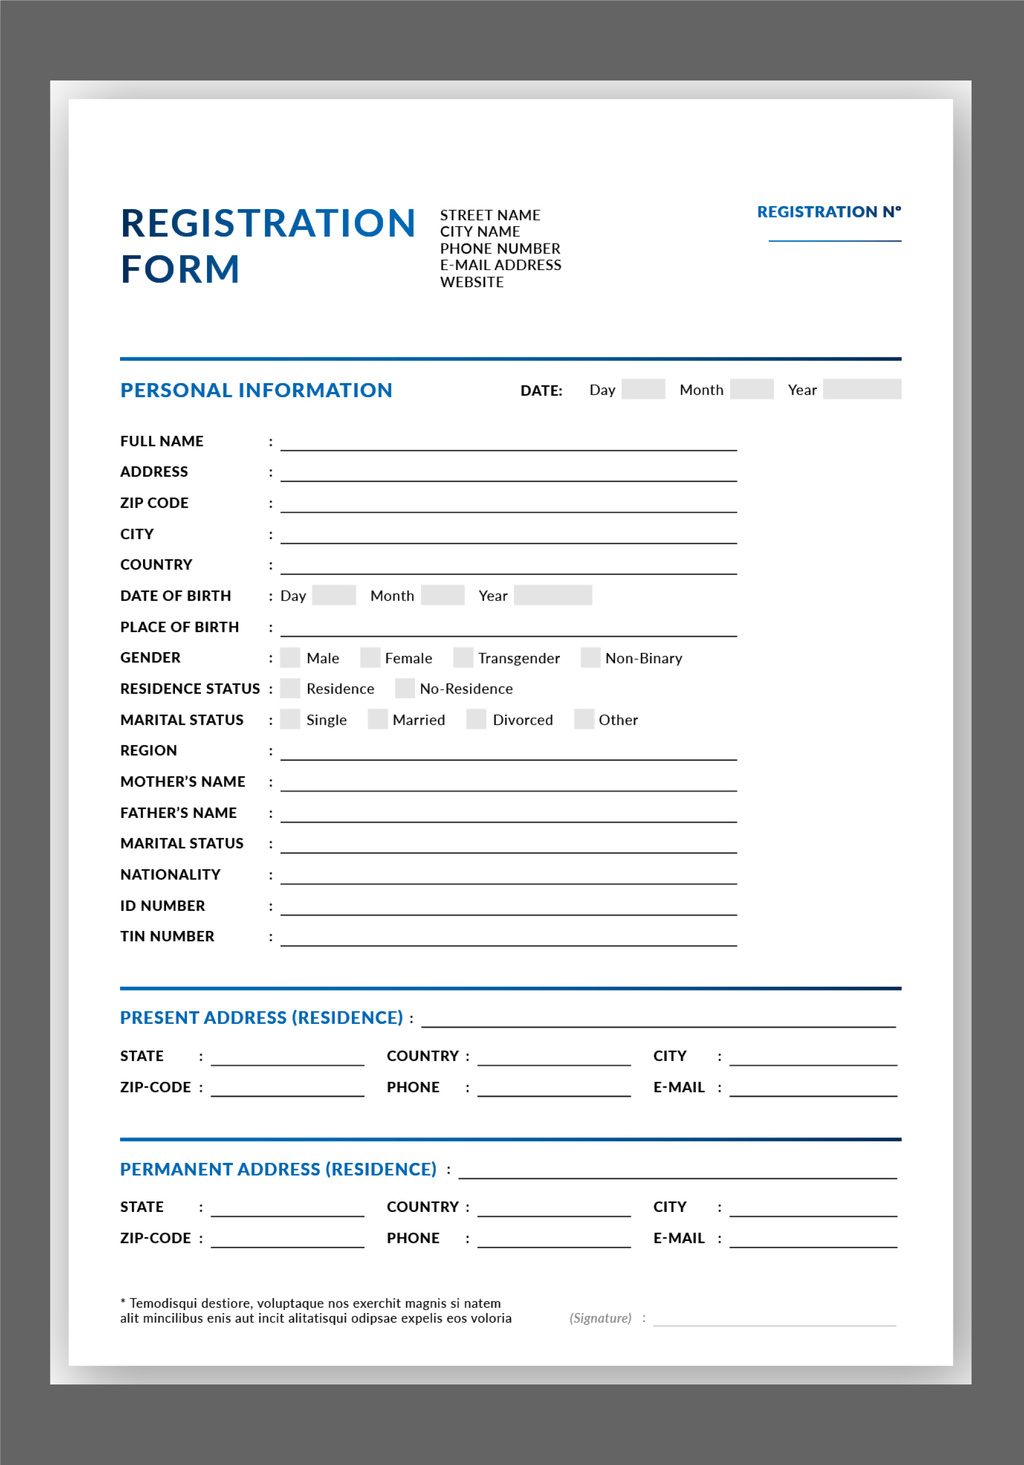 registration-form-layout